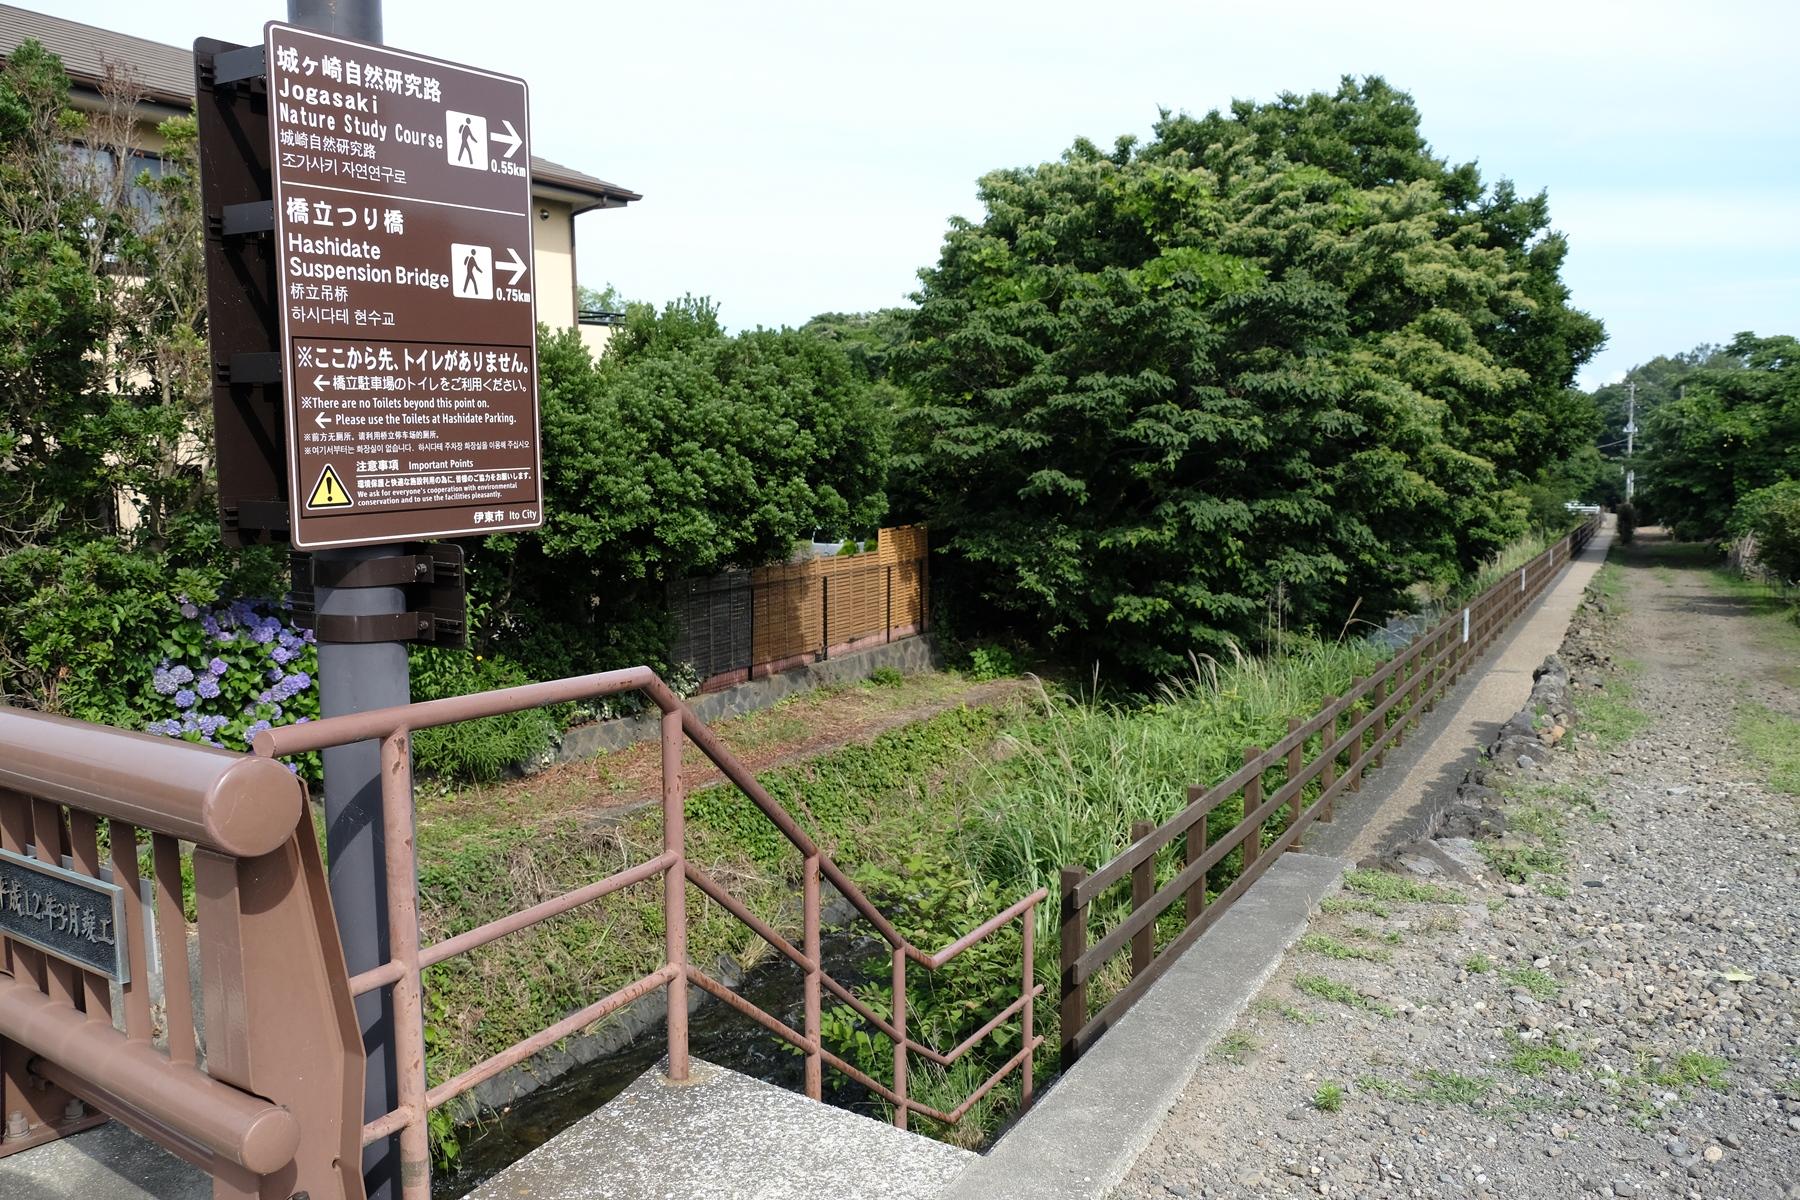 城ヶ崎自然研究路・橋立つり橋の案内表示の写真